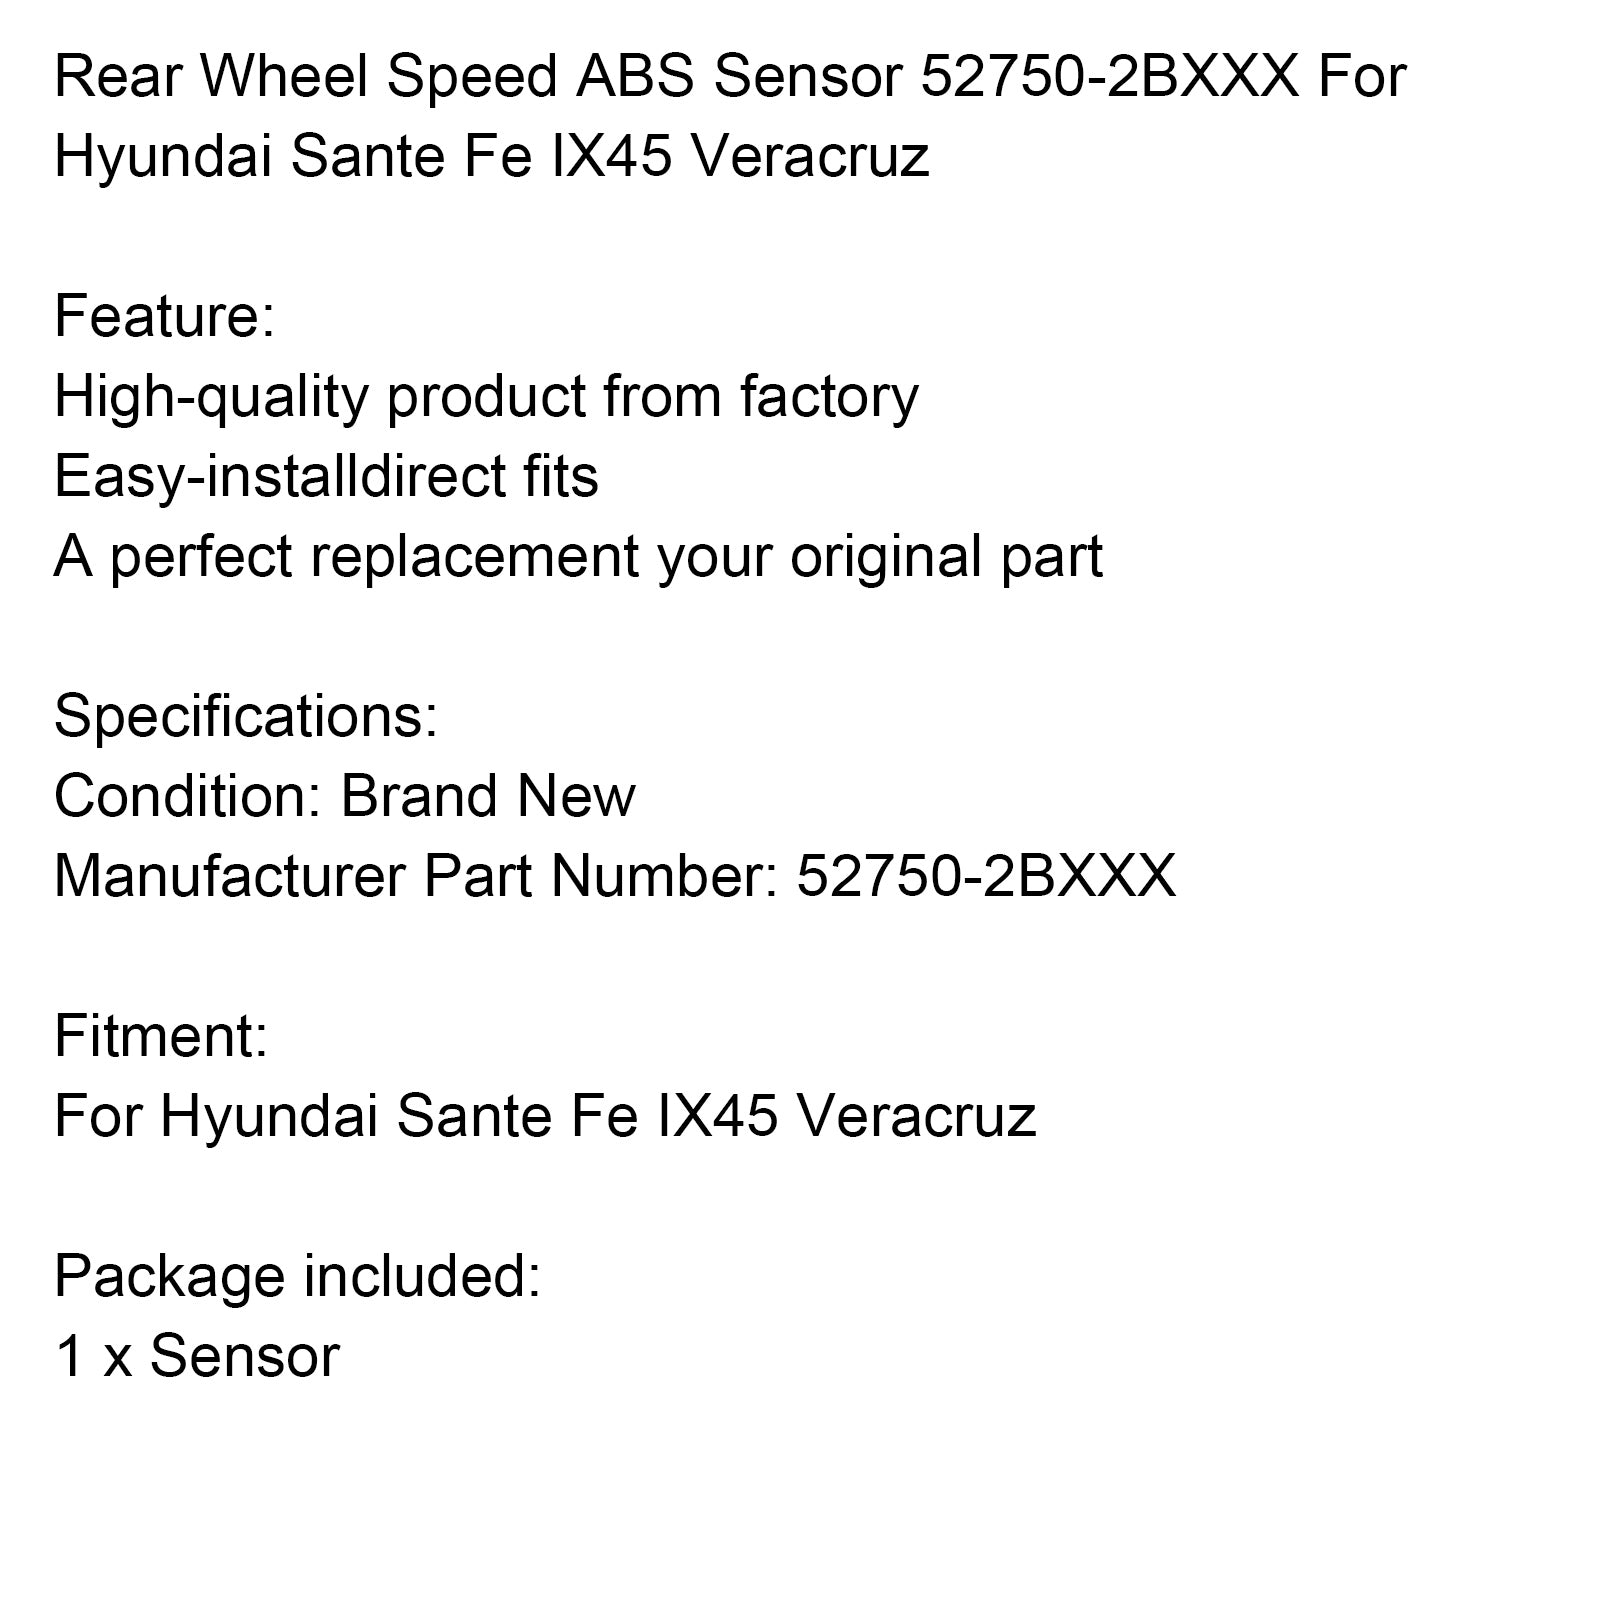 Sensore ABS velocità ruota posteriore 52750-2BXXX per Hyundai Sante Fe IX45 Veracruz